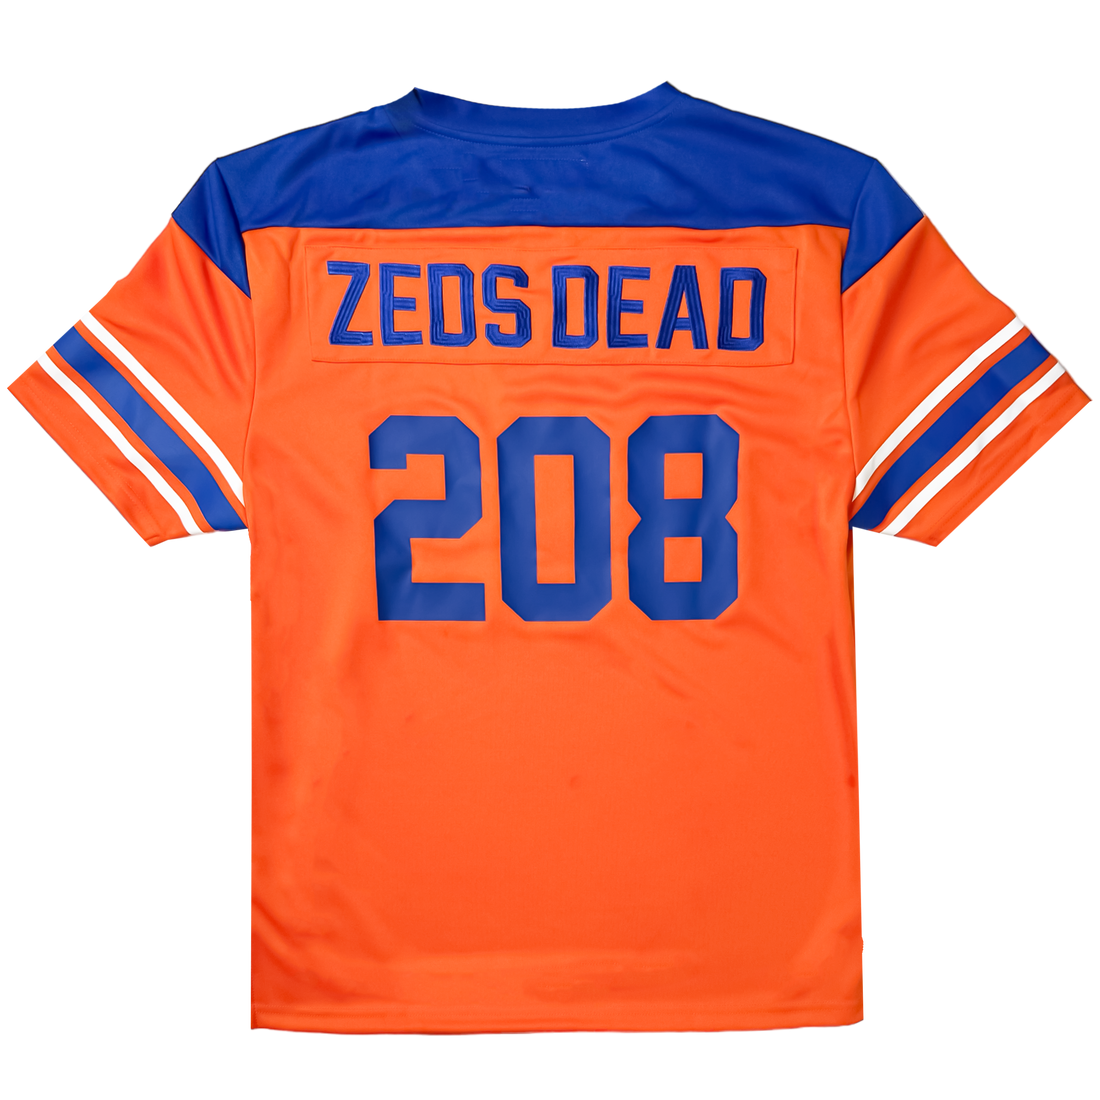 Zeds Dead - BOISE - Football Jersey